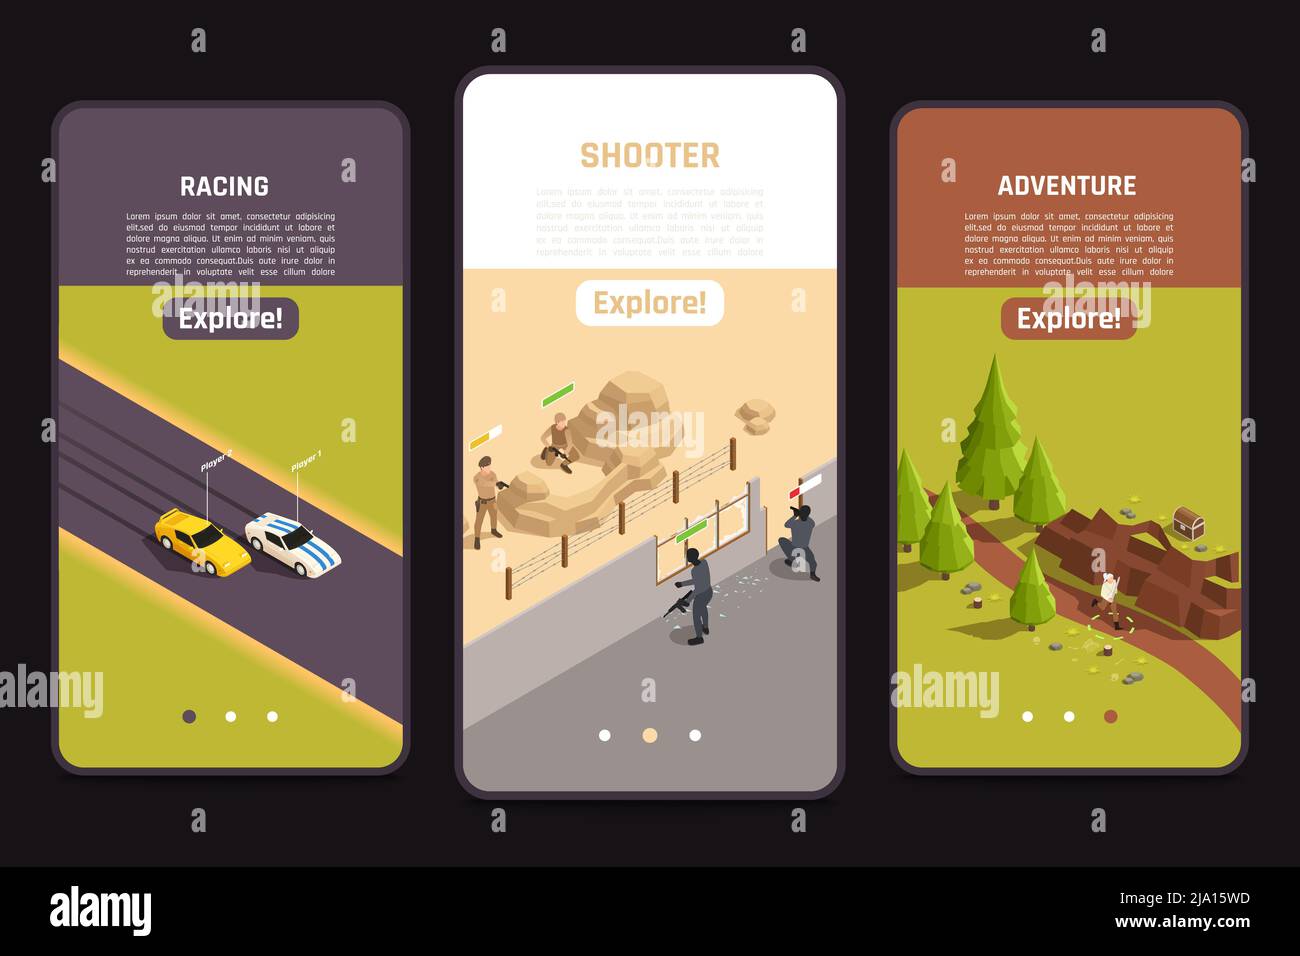 Application de jeu mobile plein écran 3 écrans isométriques pour smartphone avec illustration vectorielle de tir d'aventure en plein air de course automobile Illustration de Vecteur